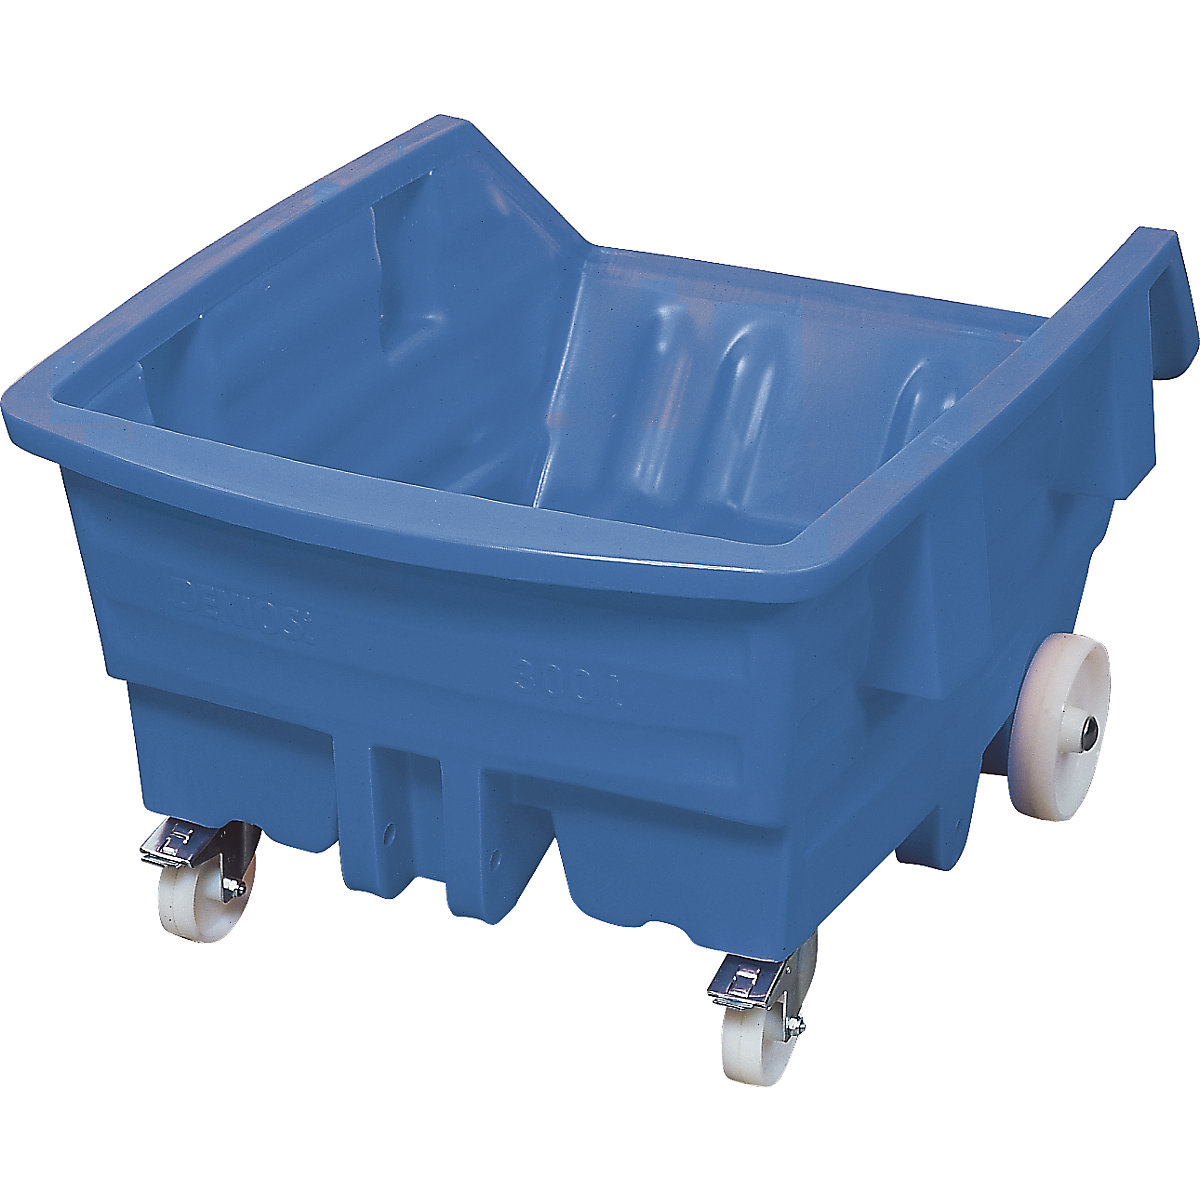 Kippbehälter aus Polyethylen, mit Rollen, Volumen 0,3 m³, blau-11